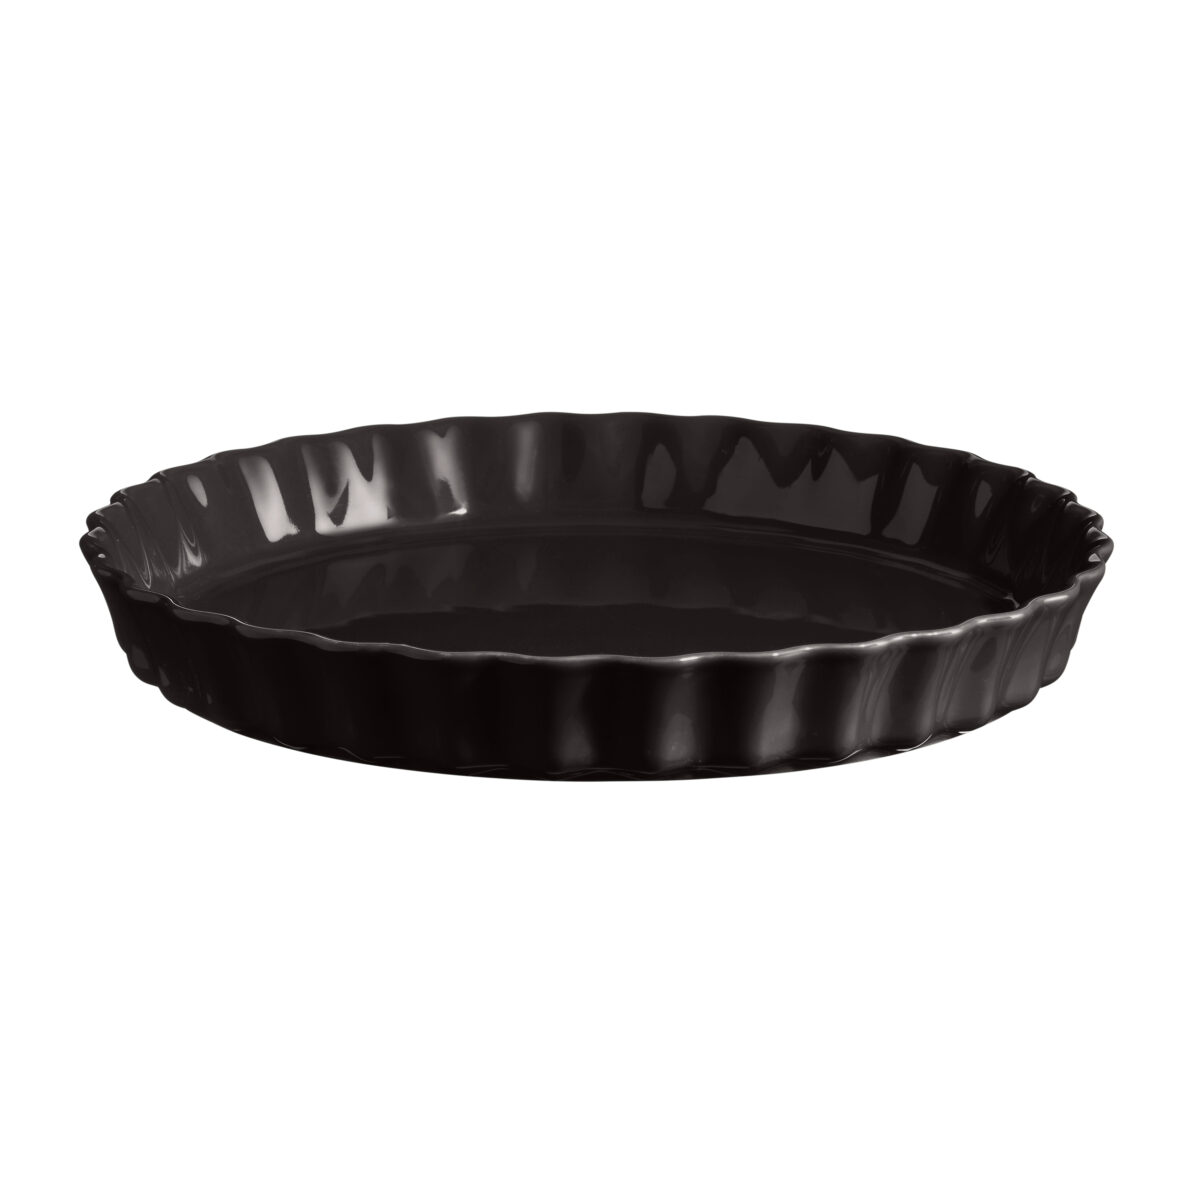 Керамична форма за тарт EMILE HENRY TART DISH - Ø 29,5 см, цвят черен